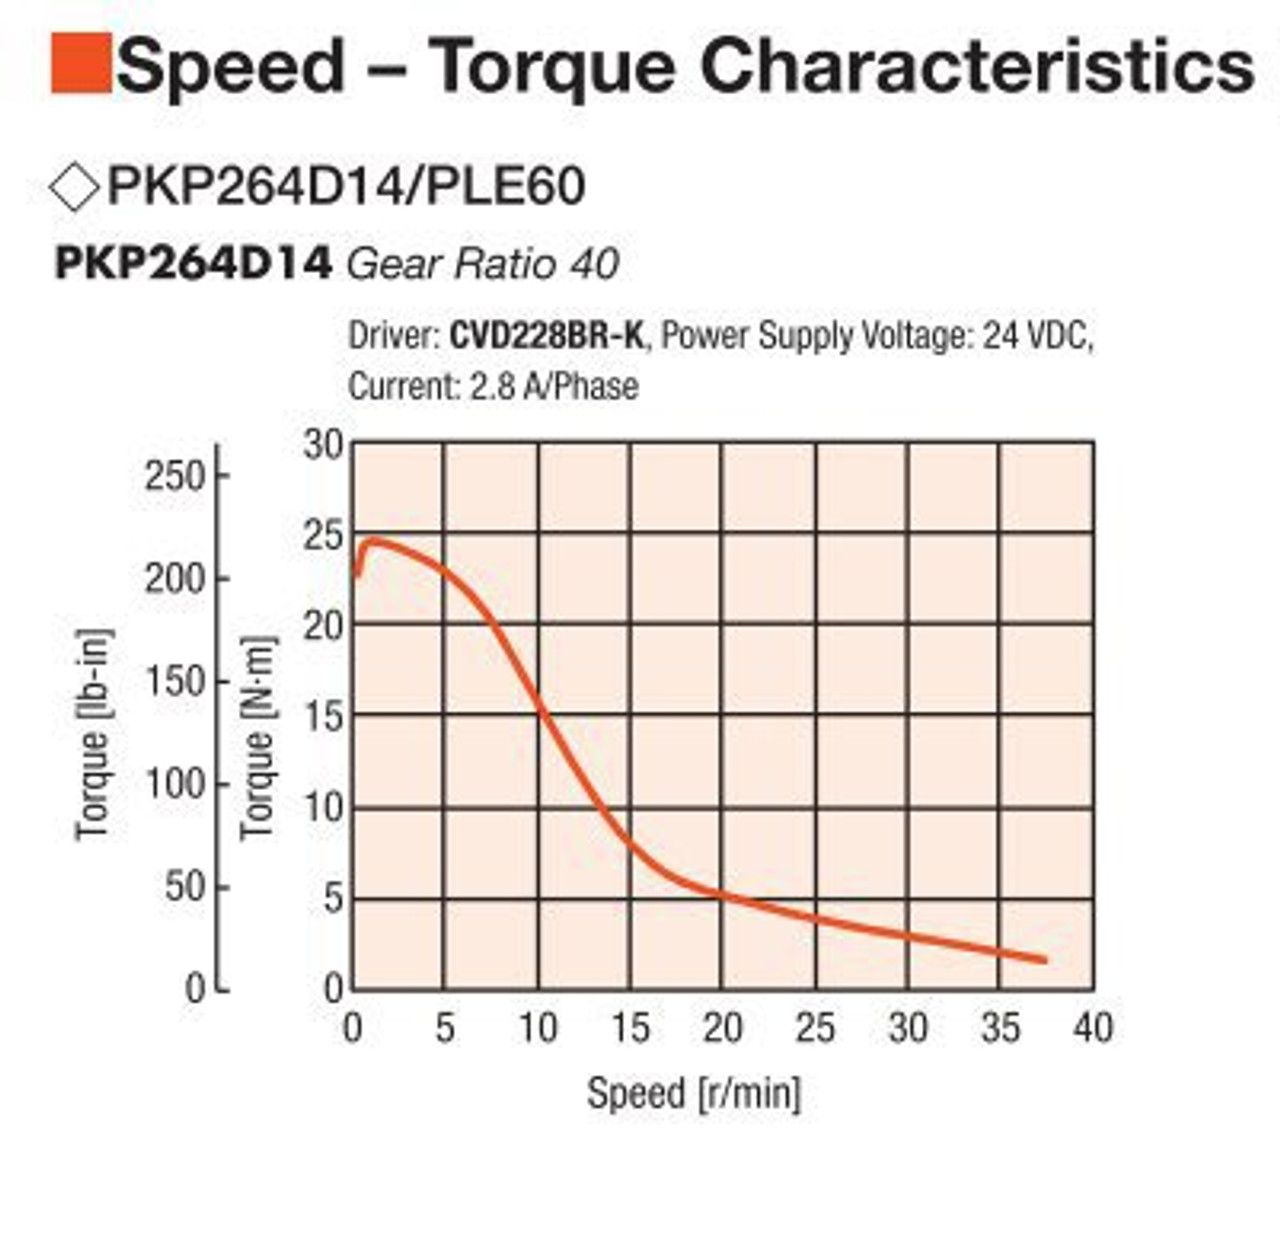 PKP264D14A2-R2FL / PLE60-40B / P00028 - Speed-Torque